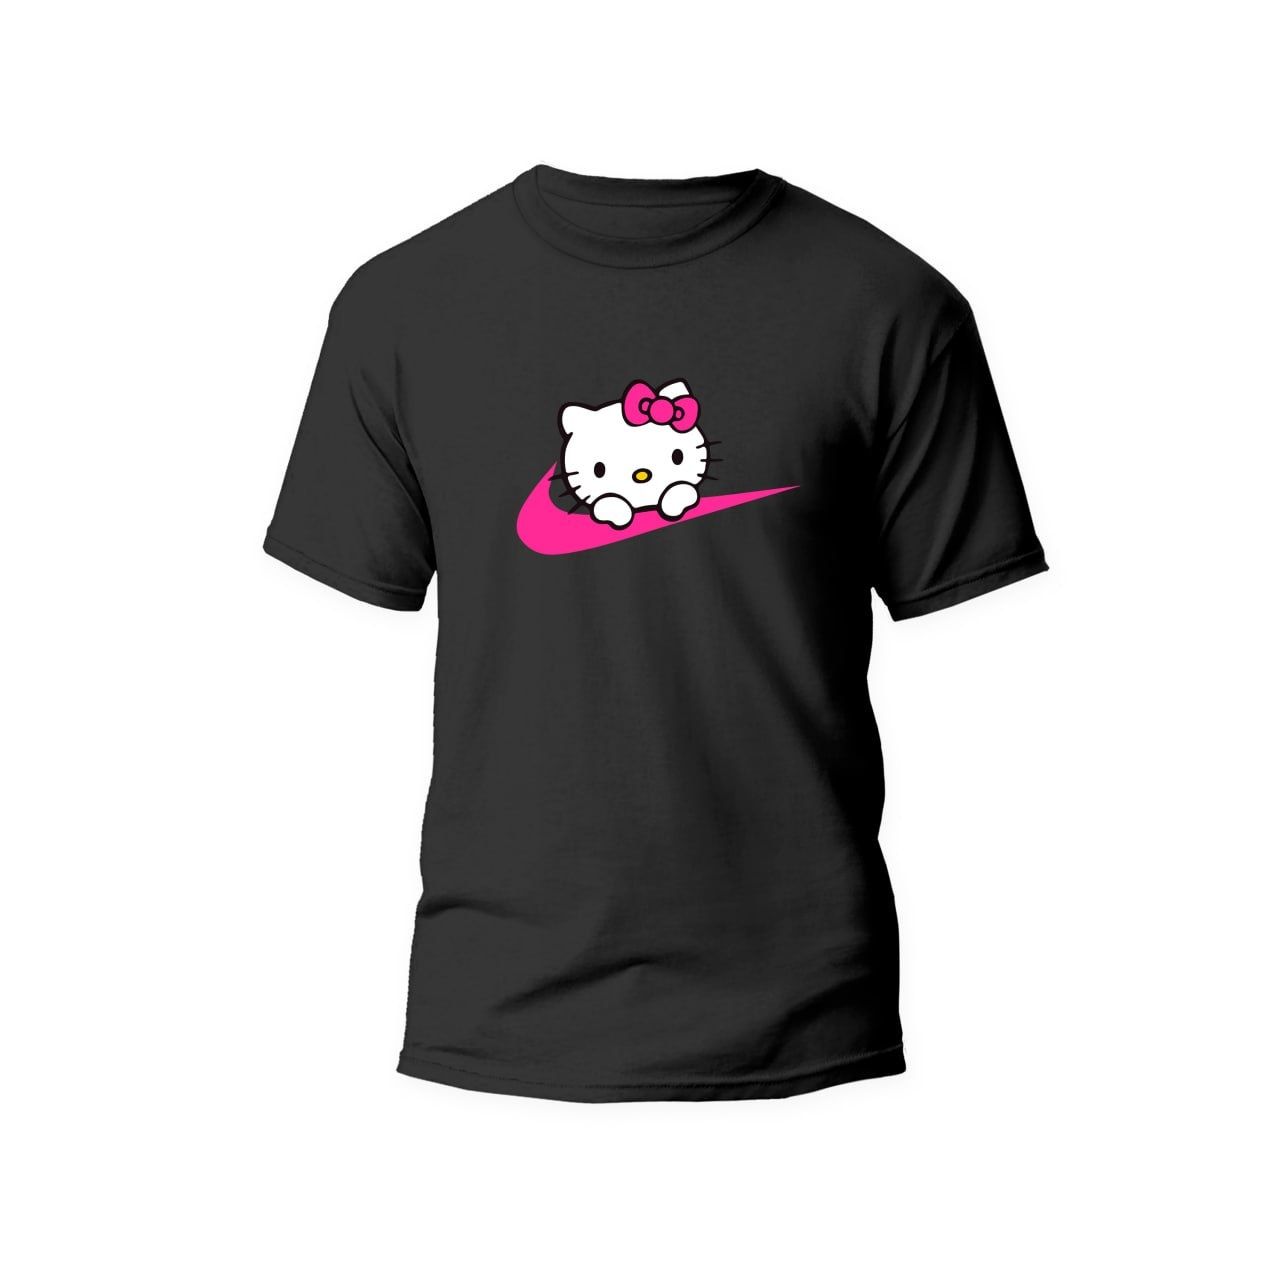 Футболка Hello Kitty футболка Nike Хело Китти Найк Кіті